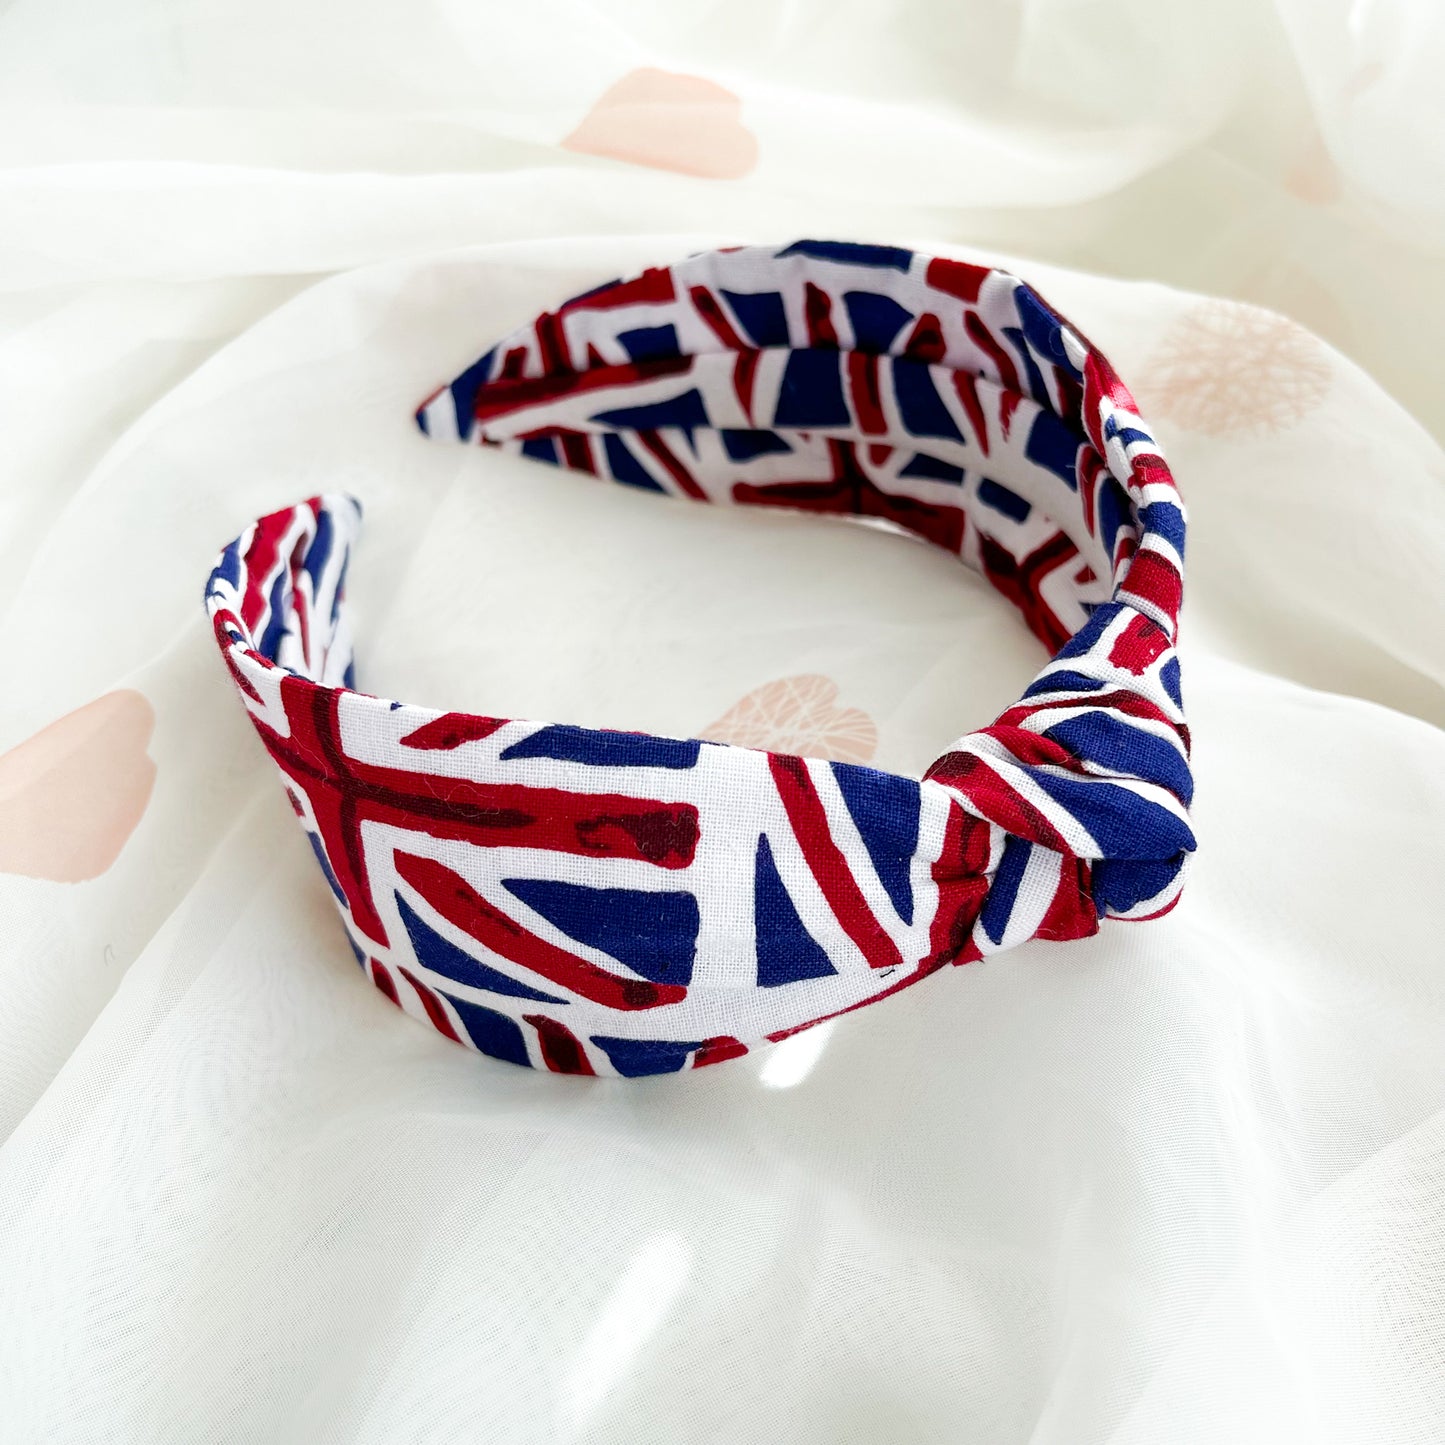 Union Jack knot headband King Charles coronation celebration keepsake street party decor outfit uk flag acessory